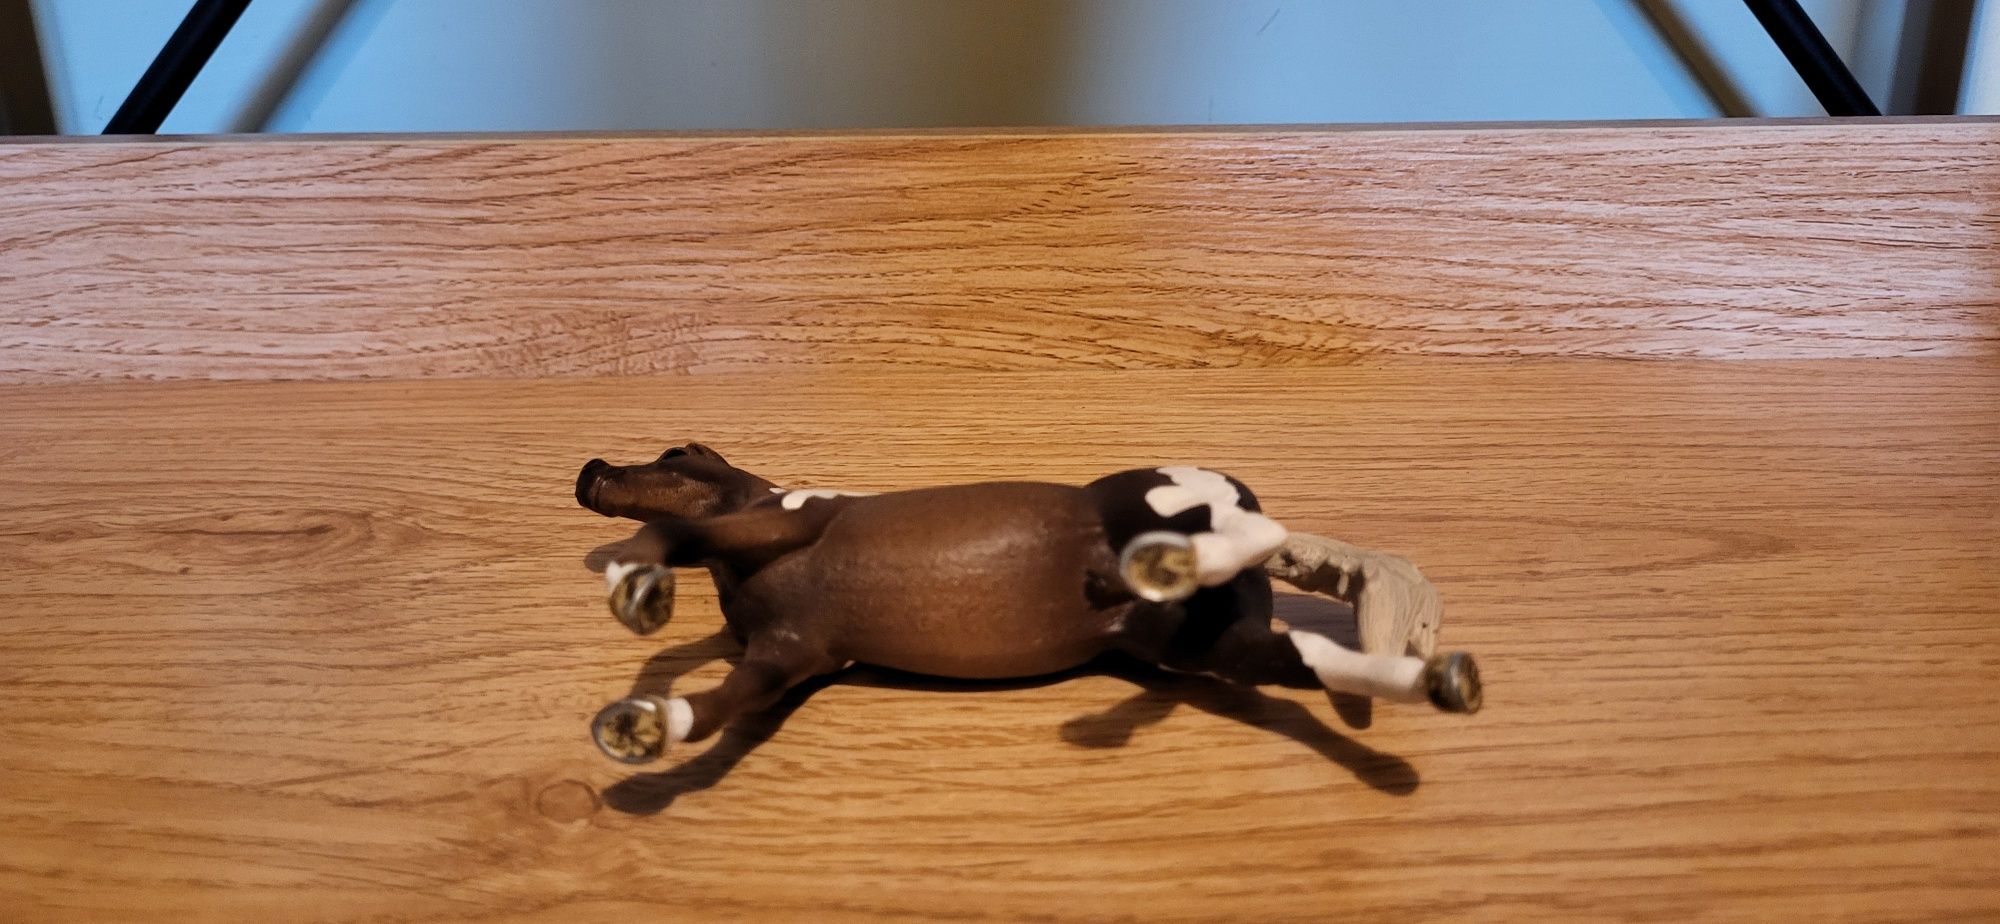 Schleich koń trakeński ogier figurka model wycofany z 2013 r.